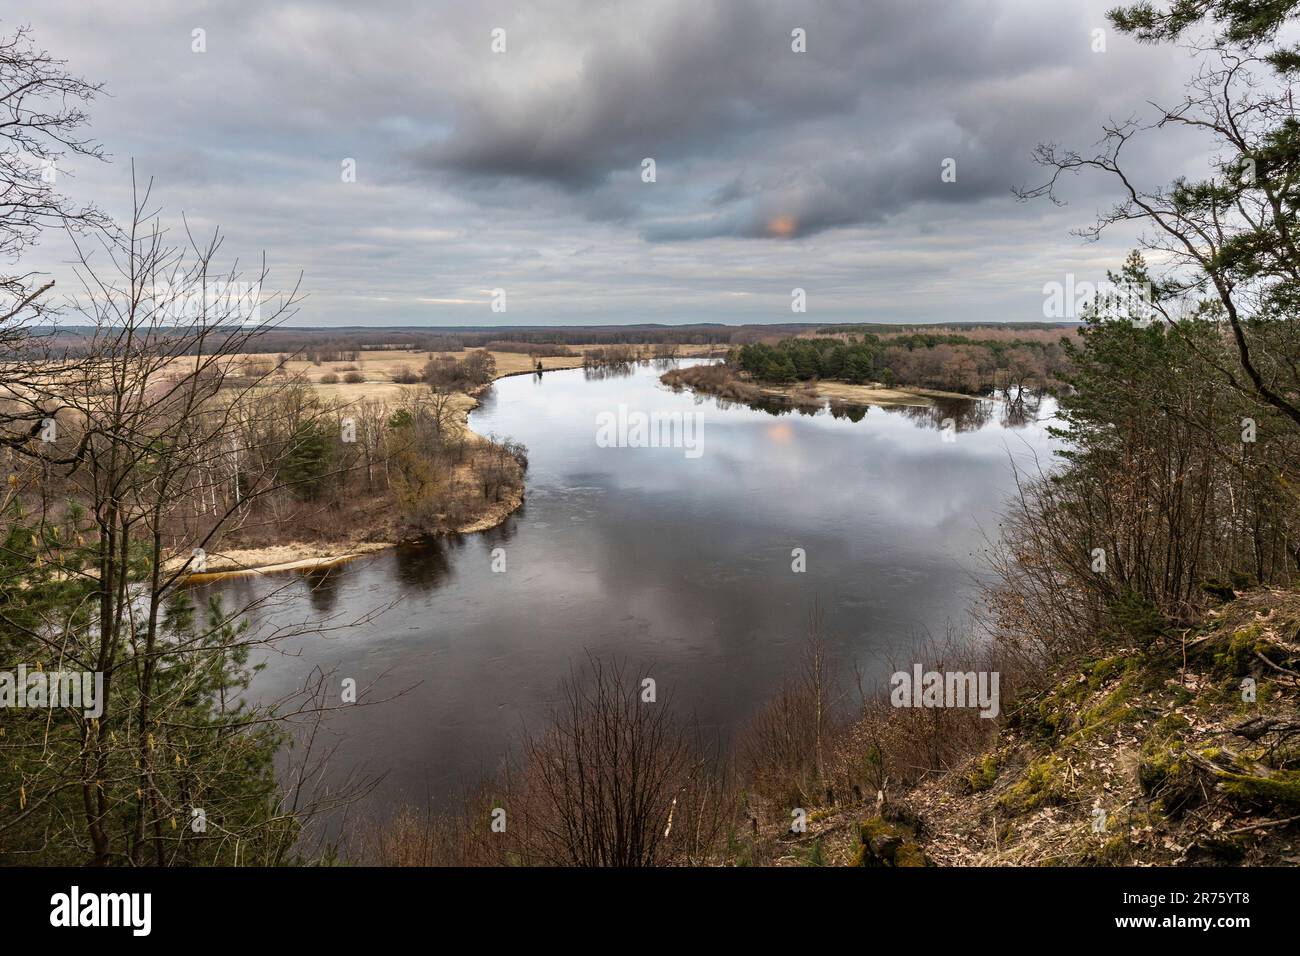 Europe, Poland, Voivodeship Masovian, Bug river in Gnojno Stock Photo